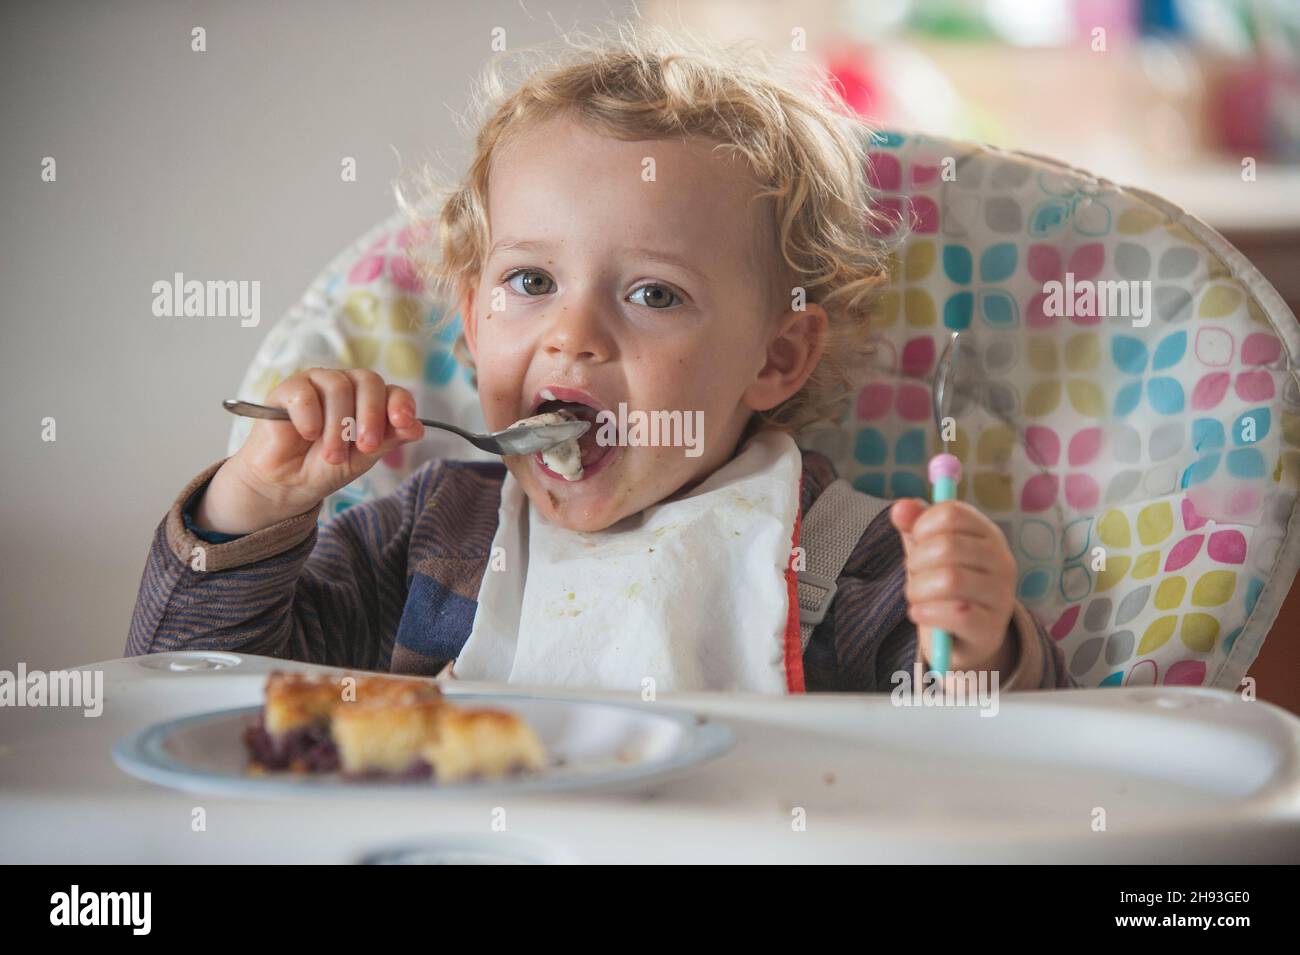 Ein 2-jähriges Mädchen isst Kuchen und Eis als Nachmittagssnack auf einem Kinderstuhl. Stockfoto